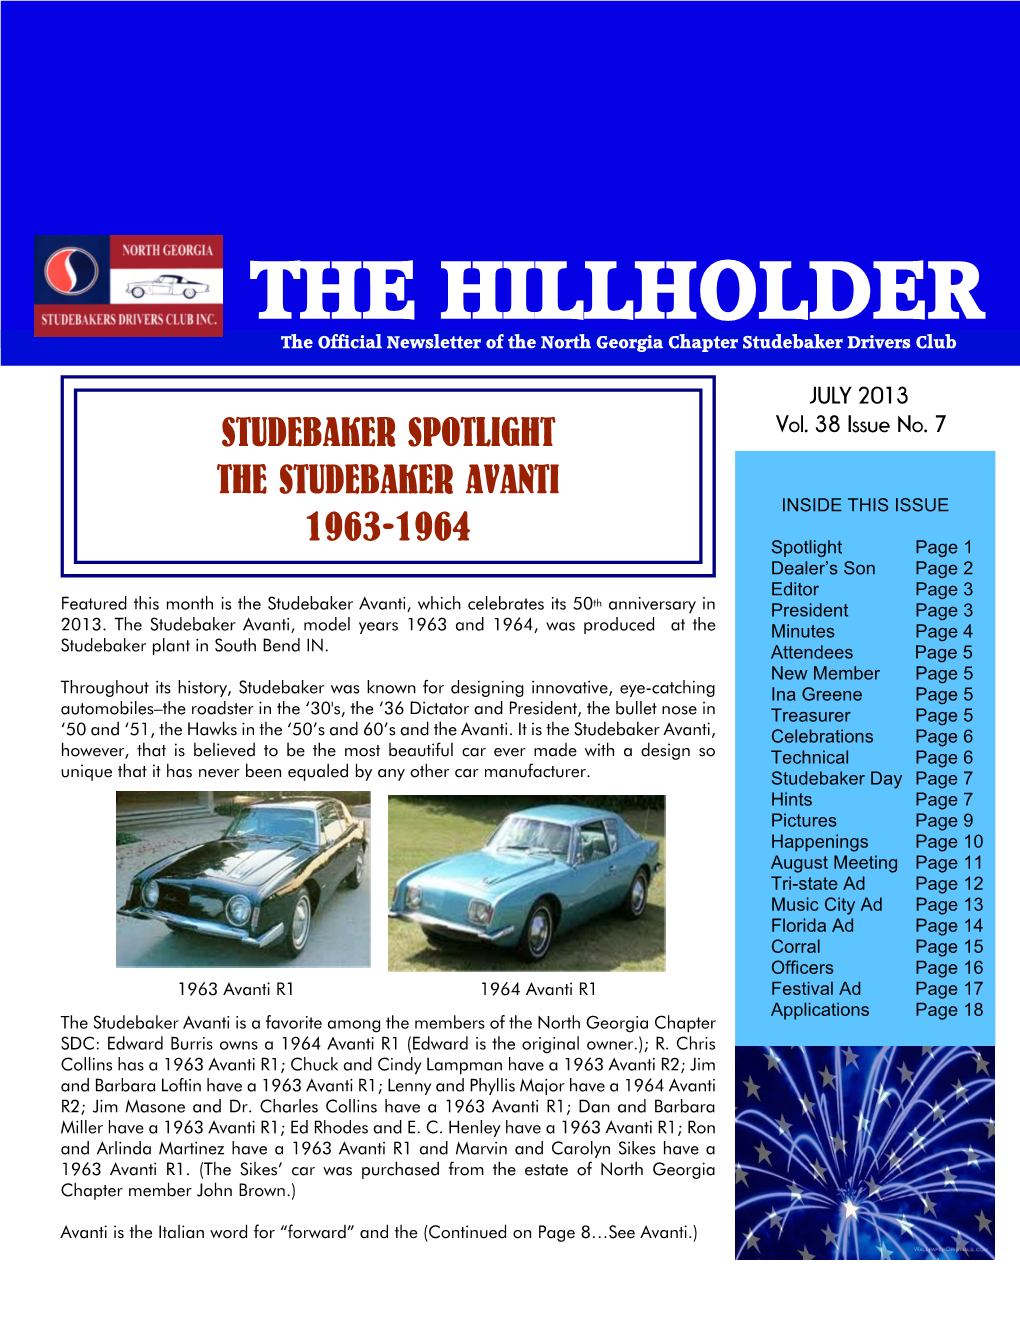 The Hillholder July 2013